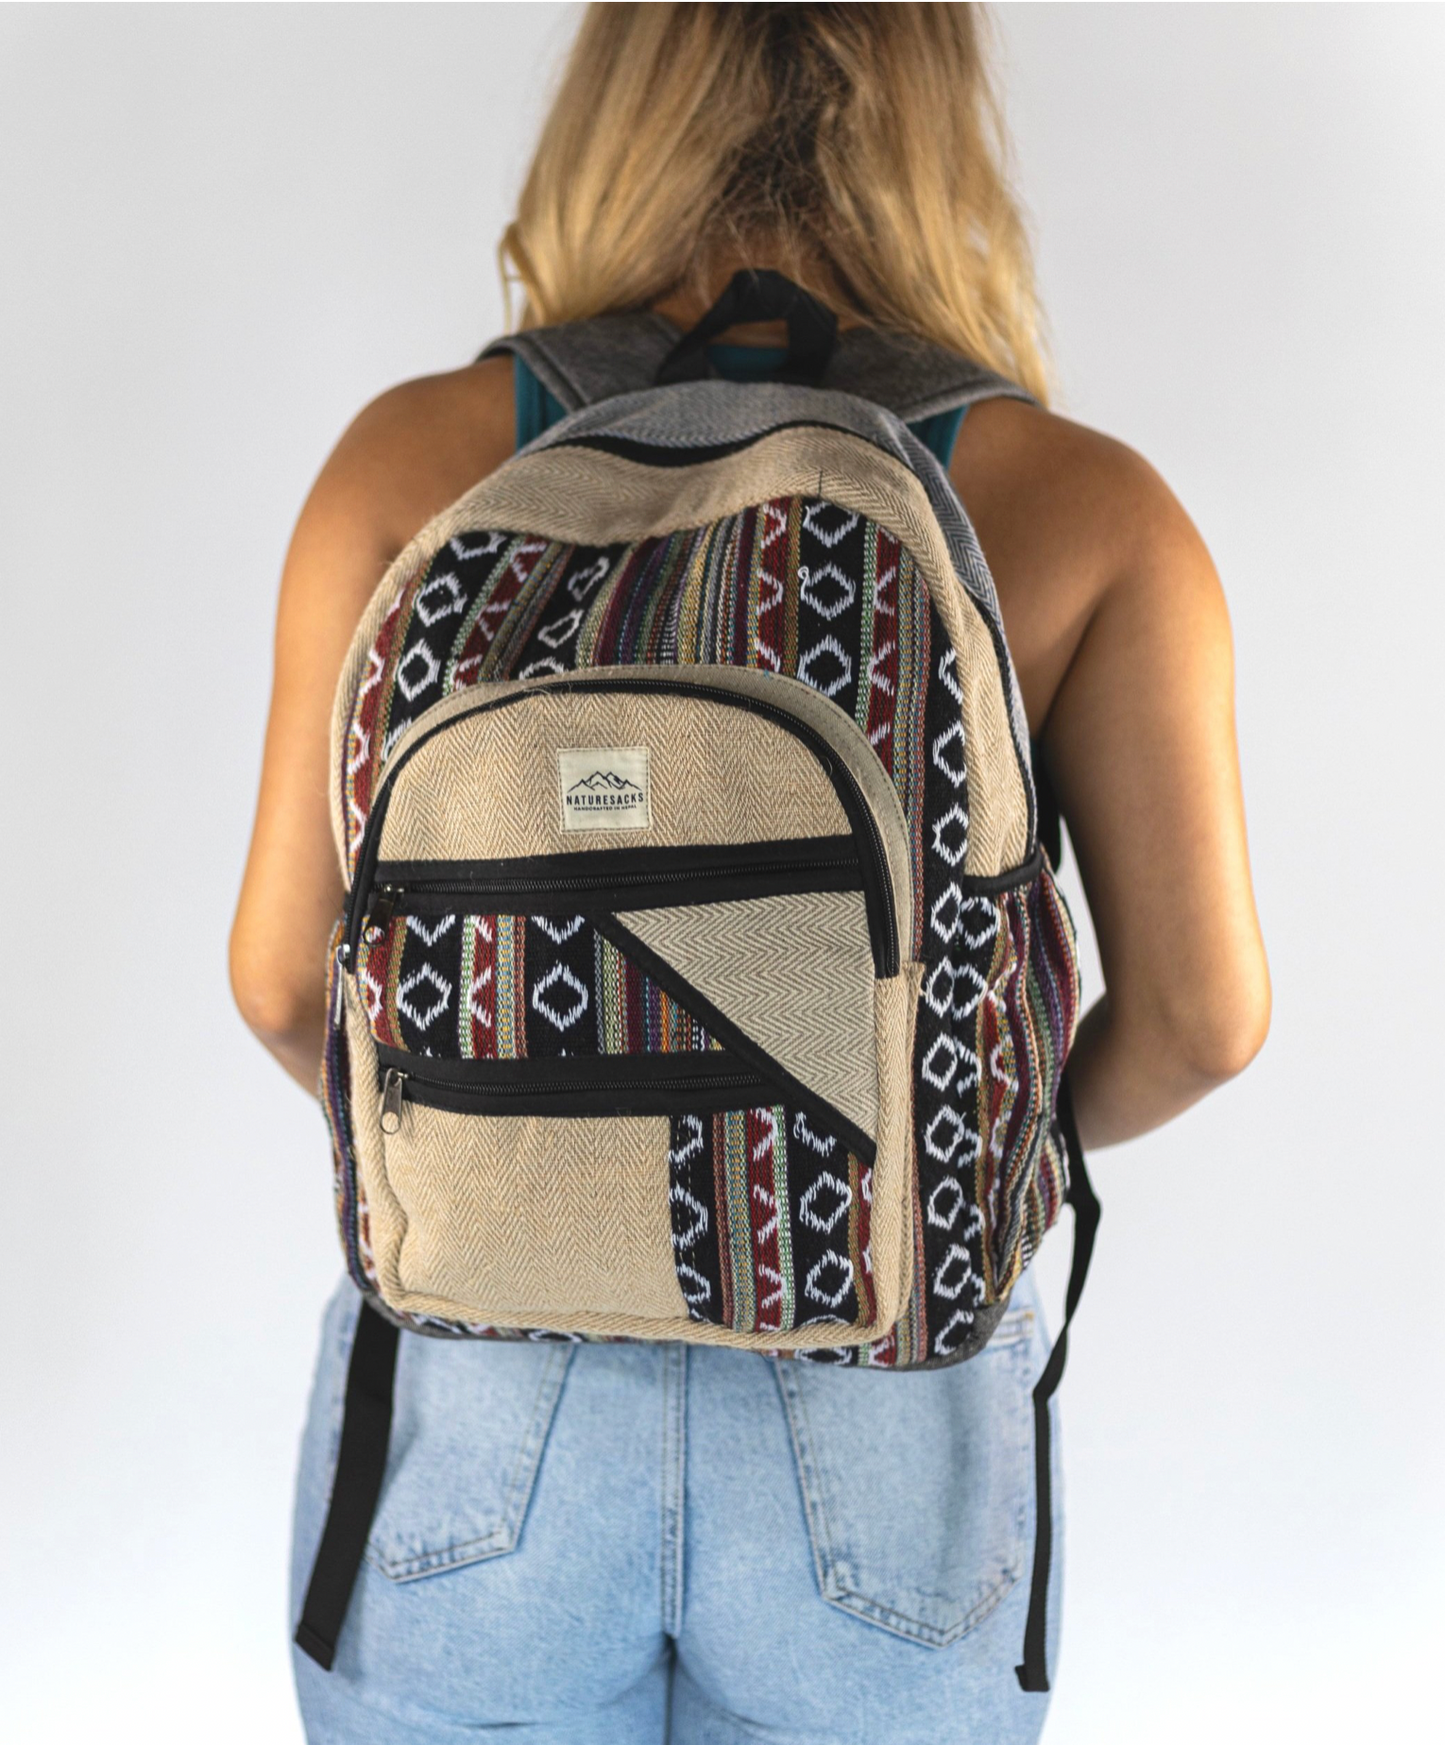 Nature Sacks - Handcrafted Hemp Backpack - Black Design